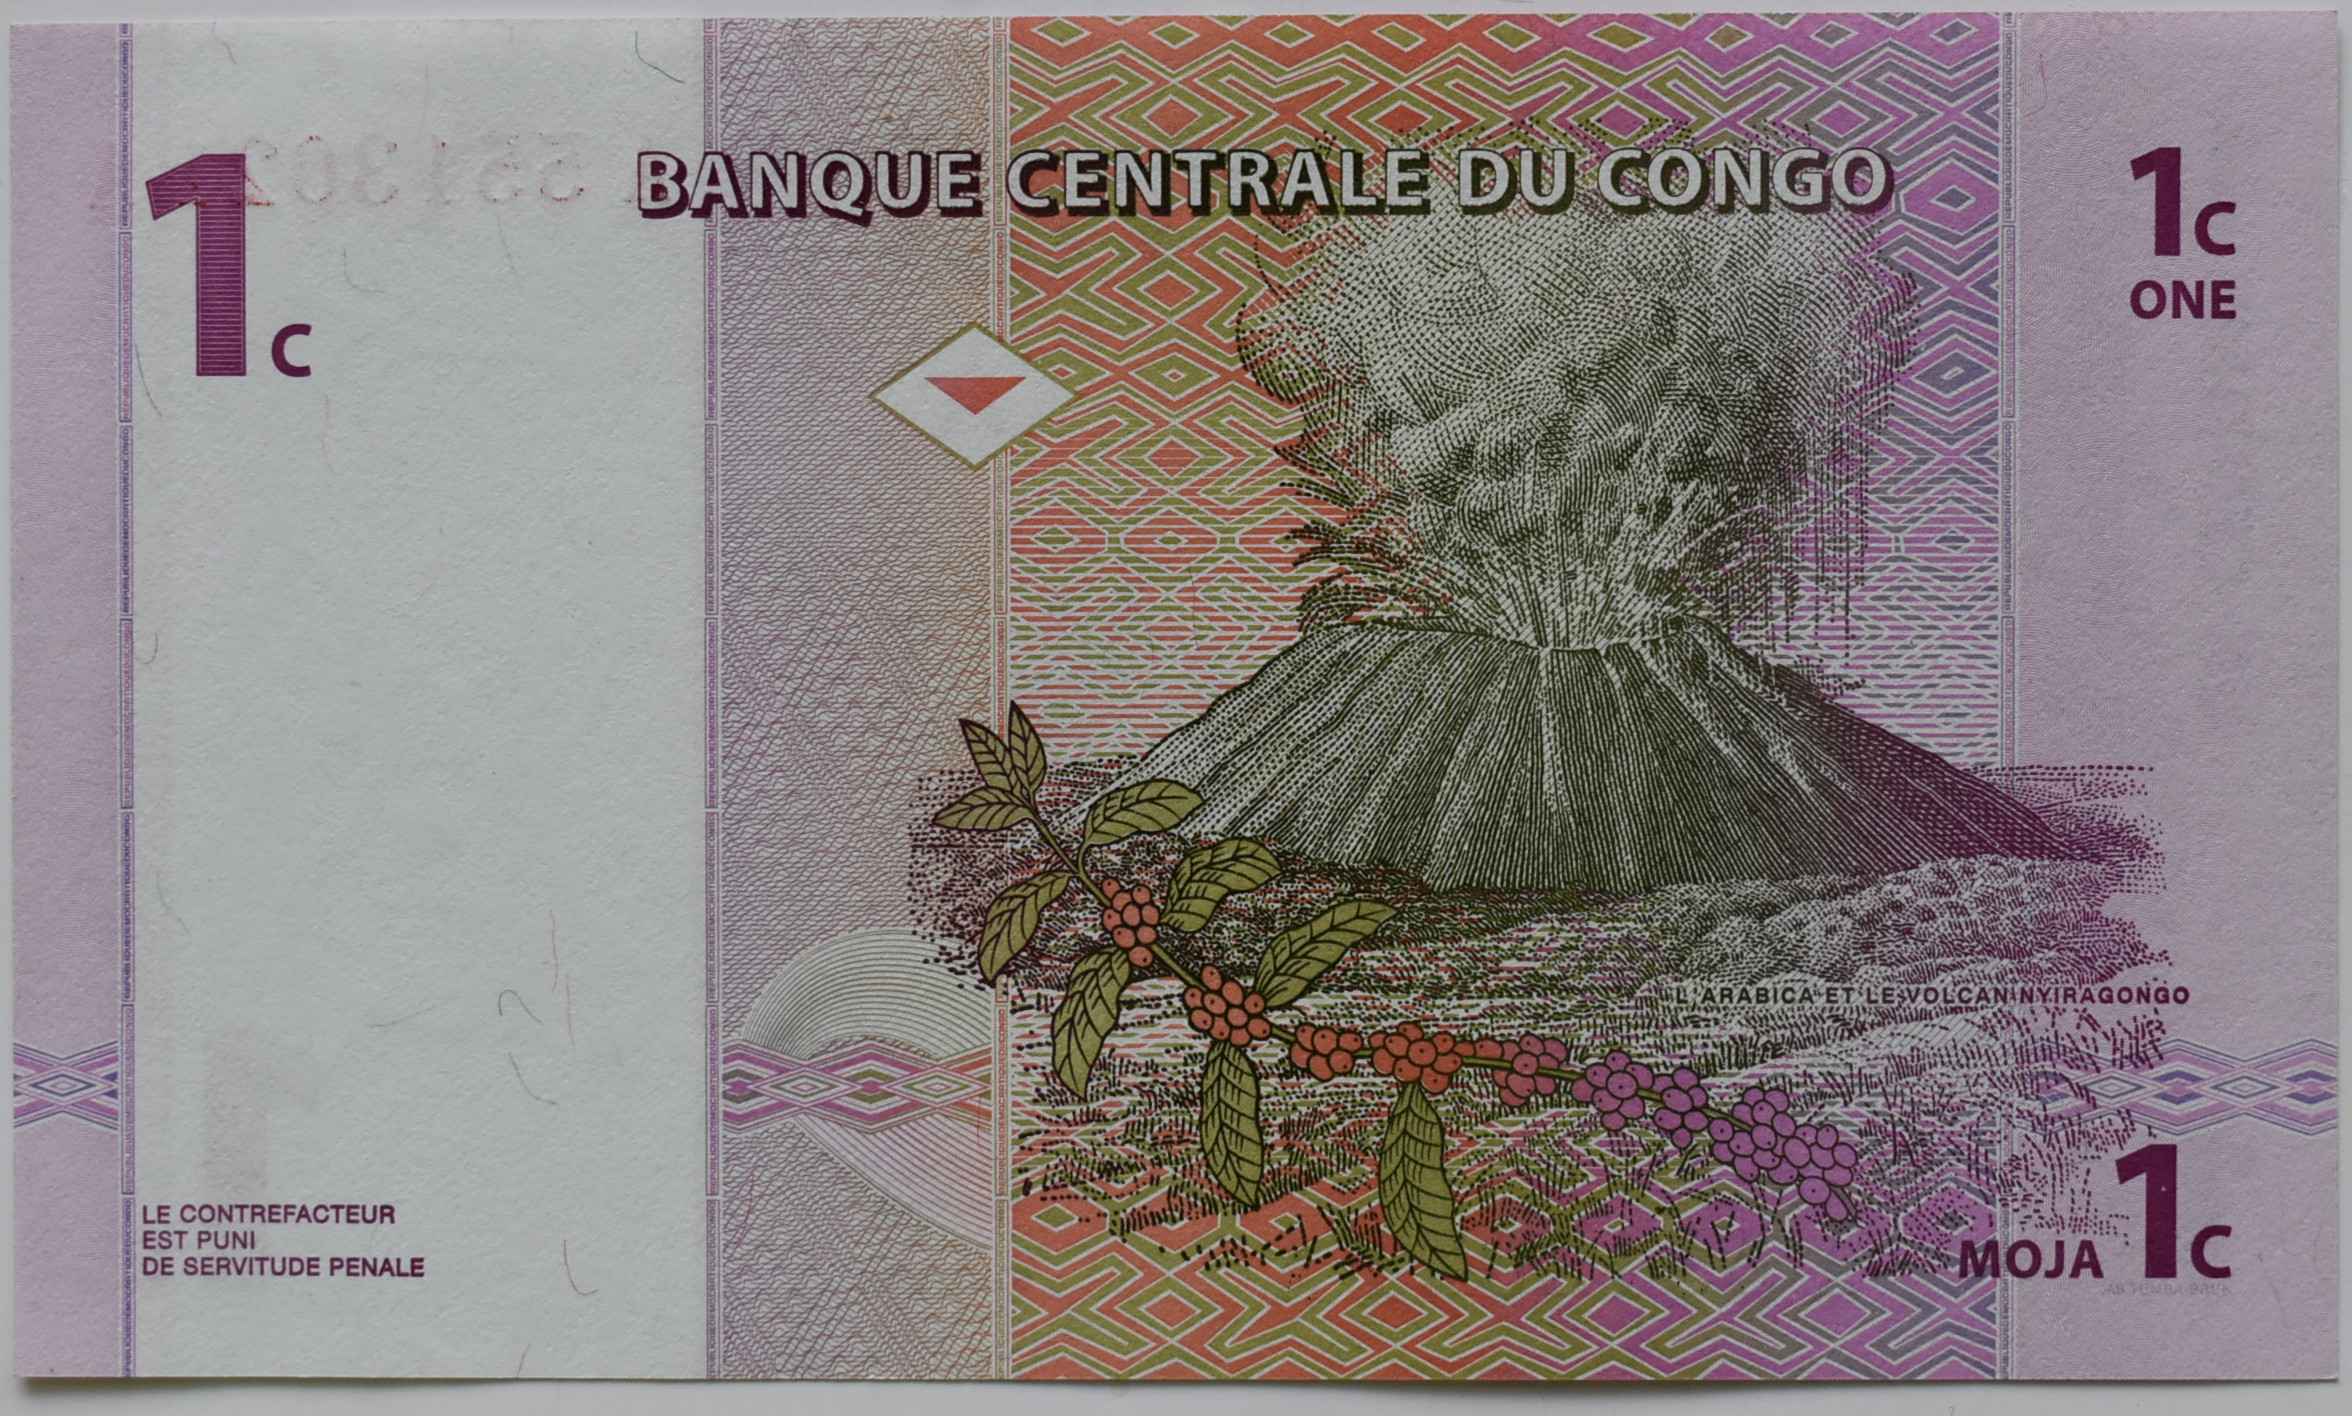 Dem.Rep.Kongo 1 Centimes 1997